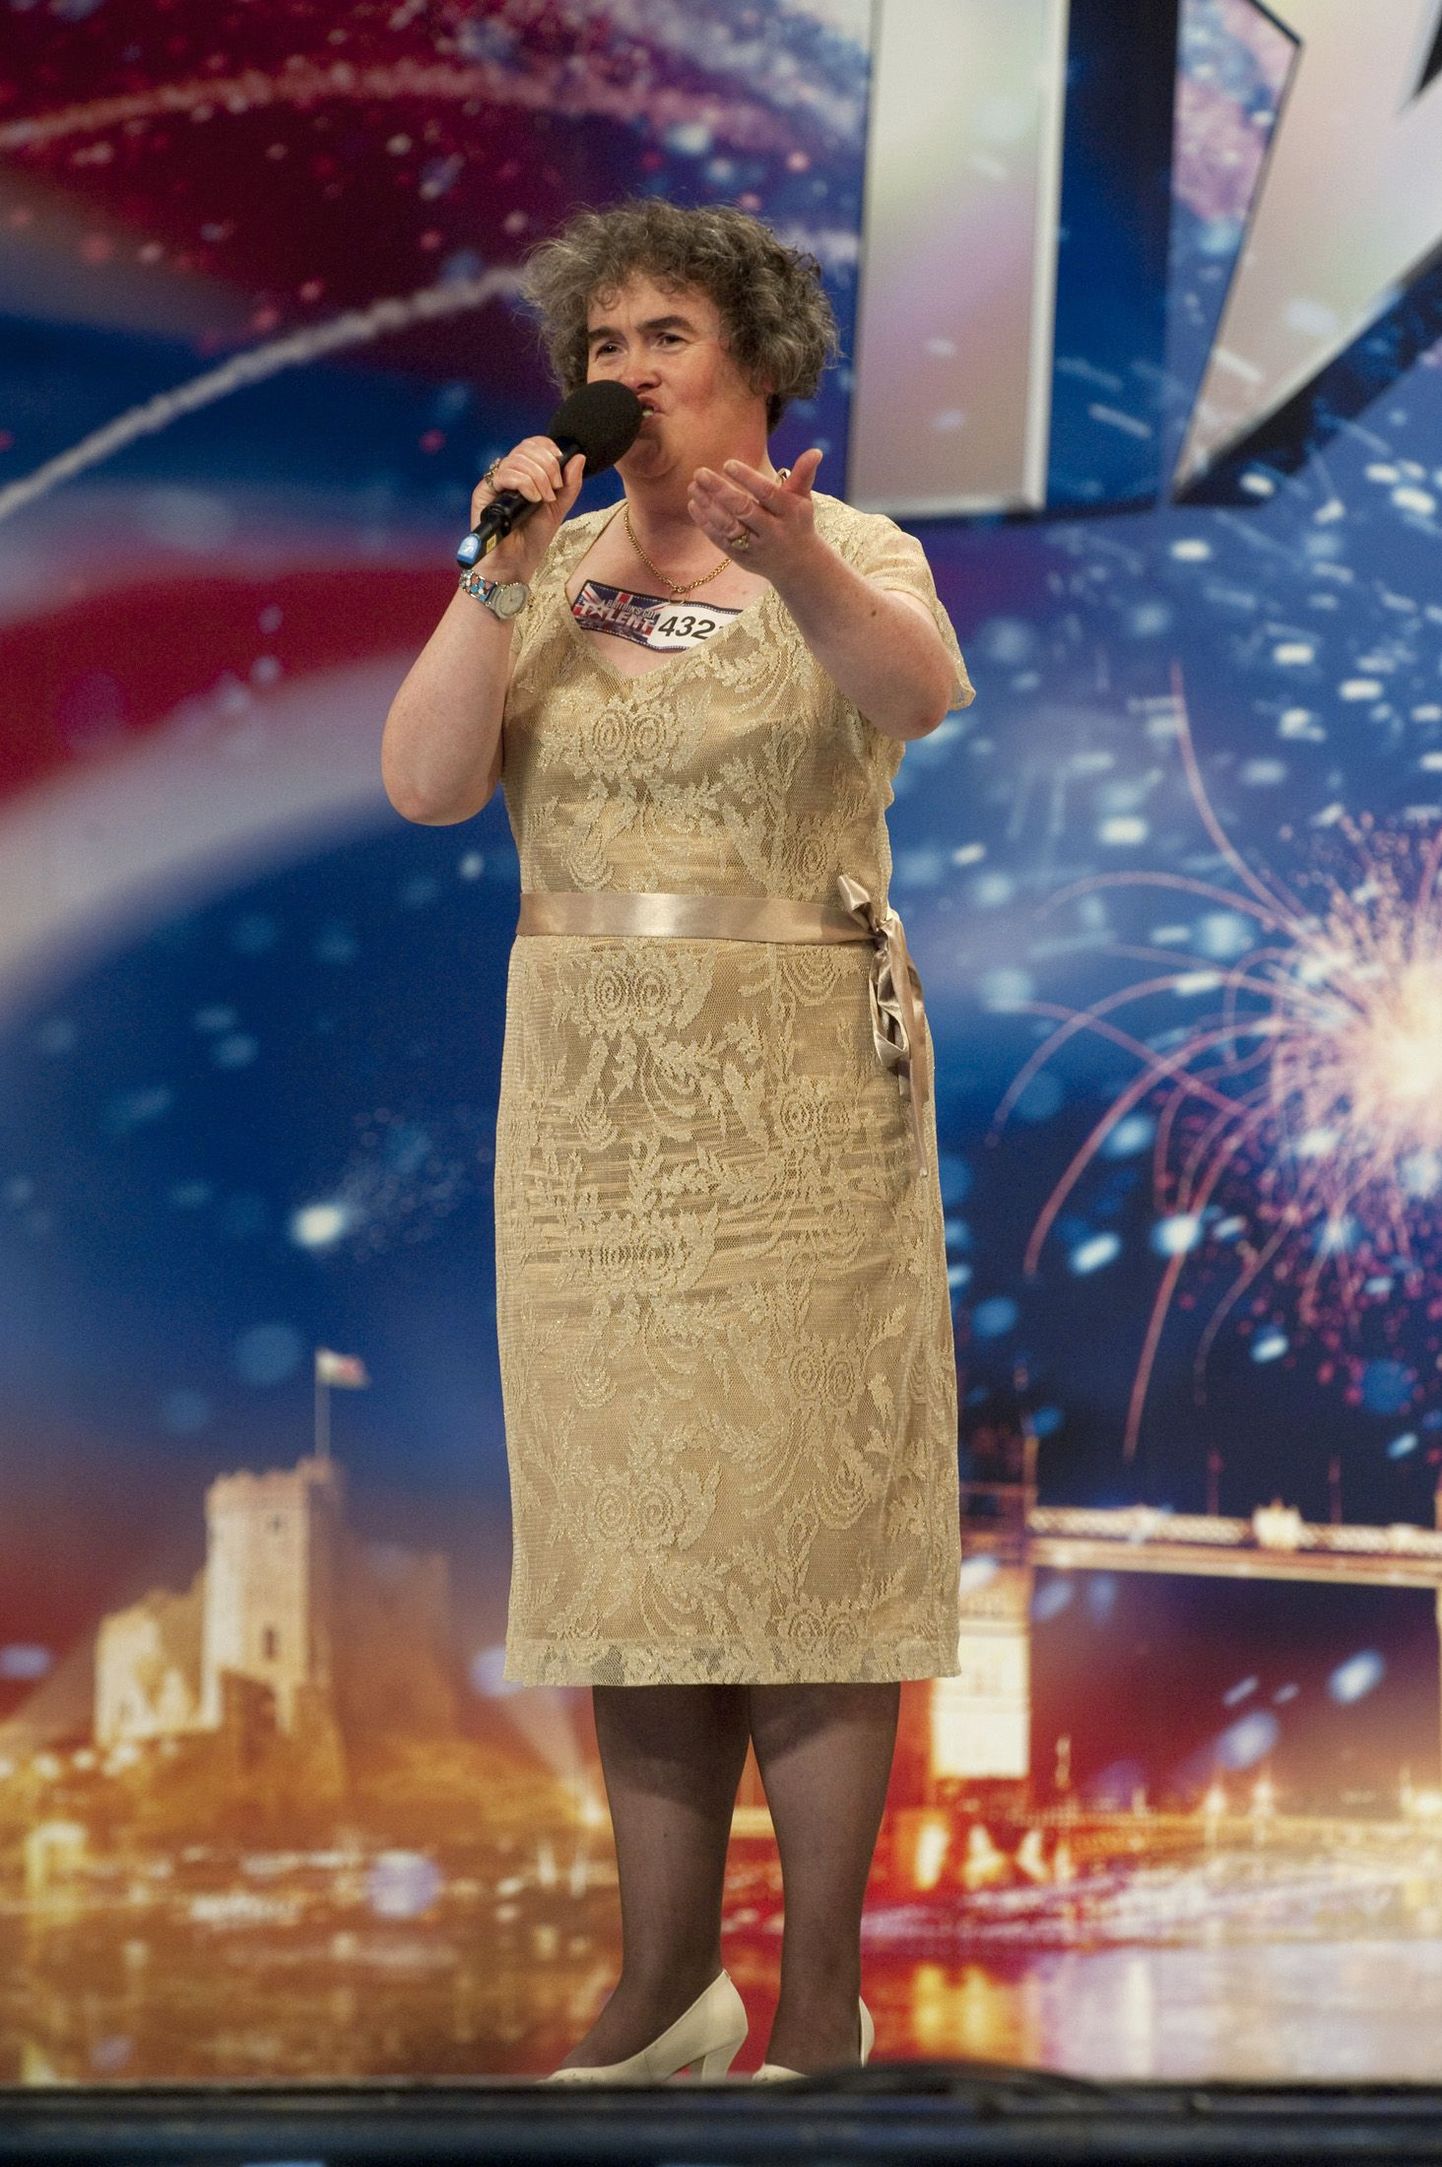 Susan Boyle talendisaates esinemas